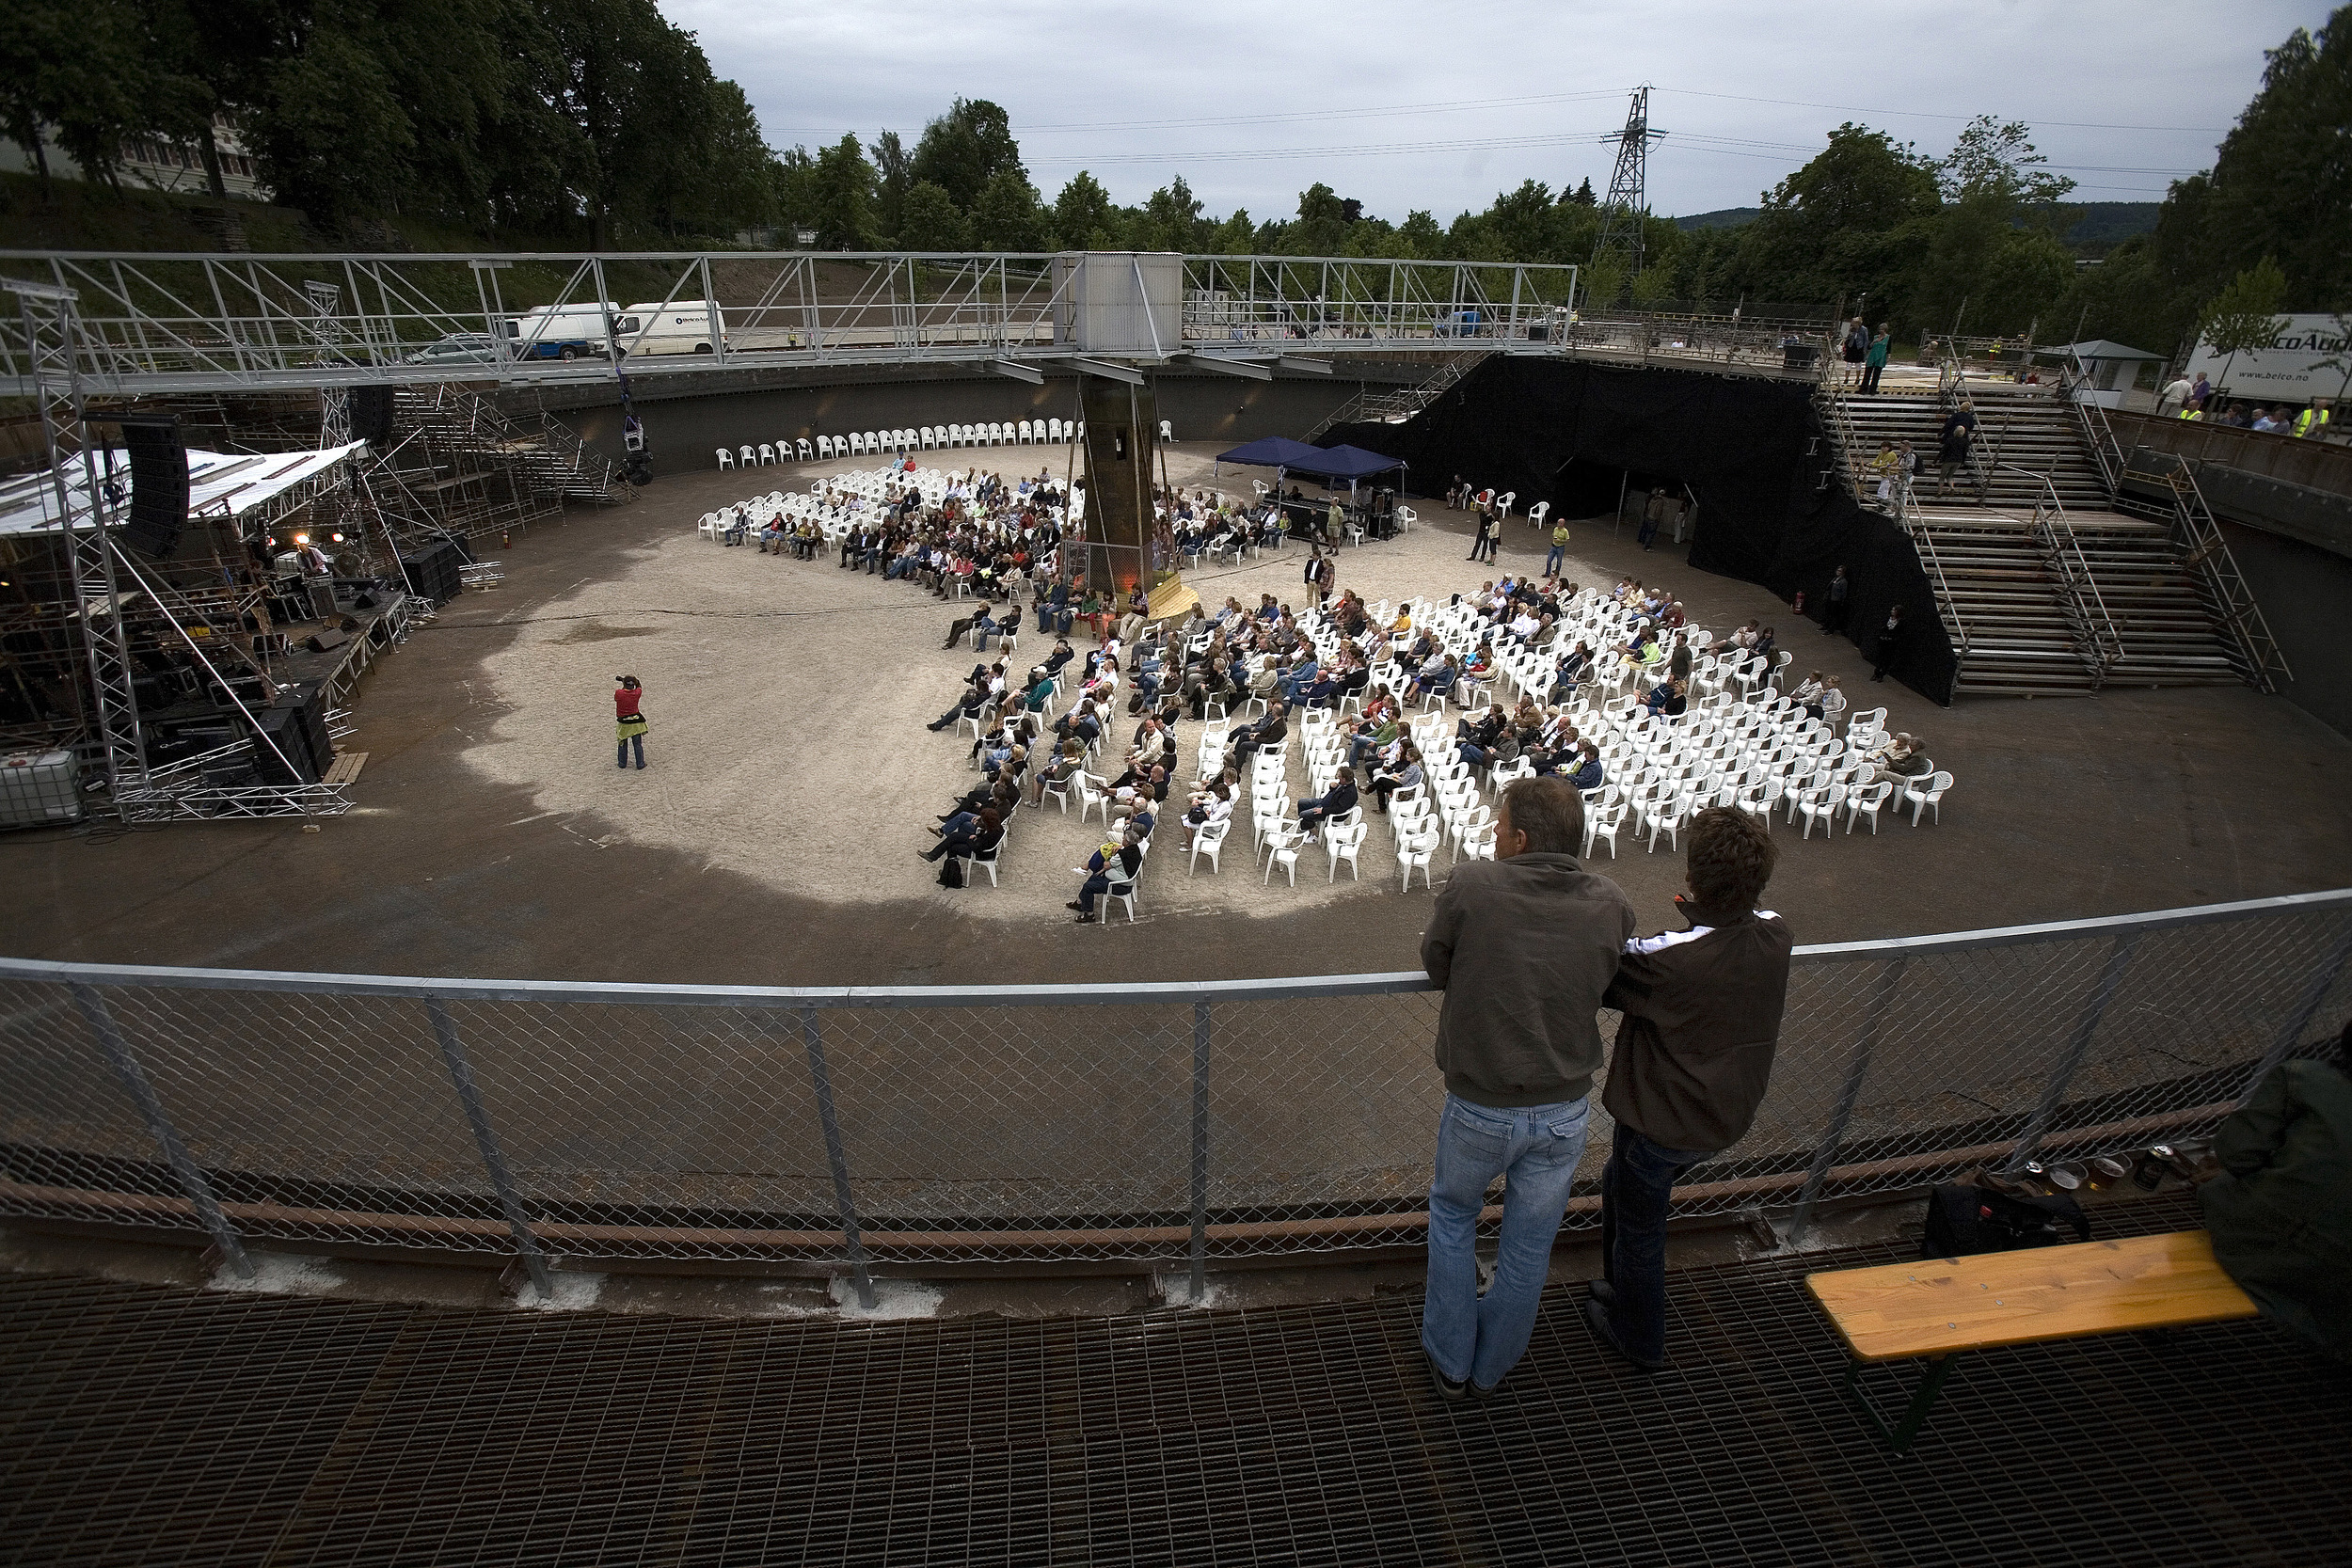   Konsert i sedimentbassenget (foto Dag Jenssen)  